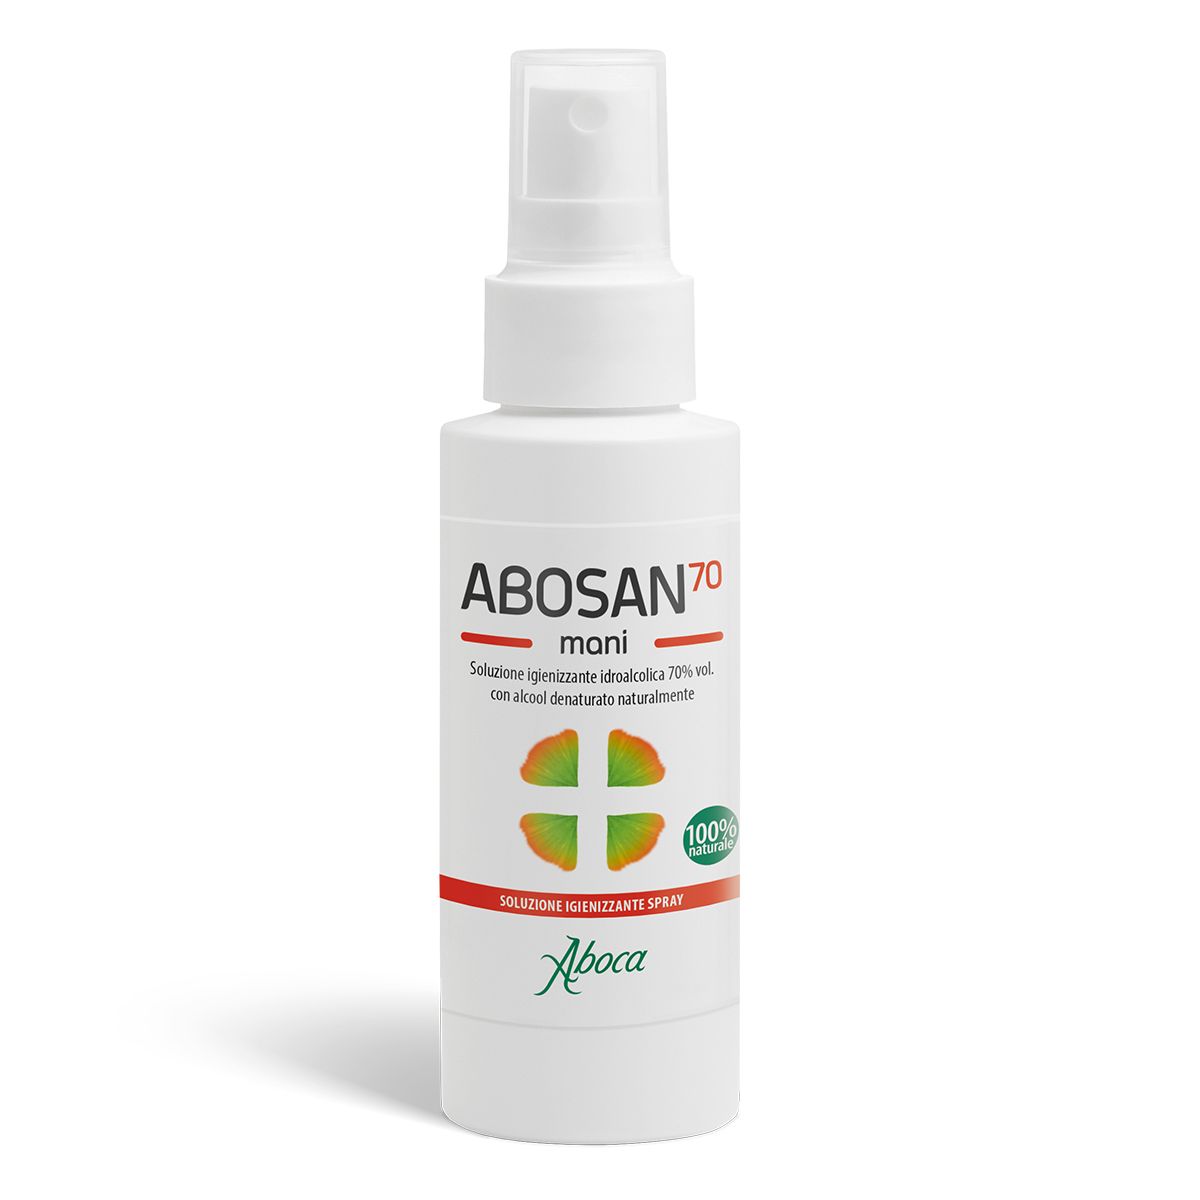 Aboca Abosan70 Soluzione Igienizzante Mani Spray 100ml